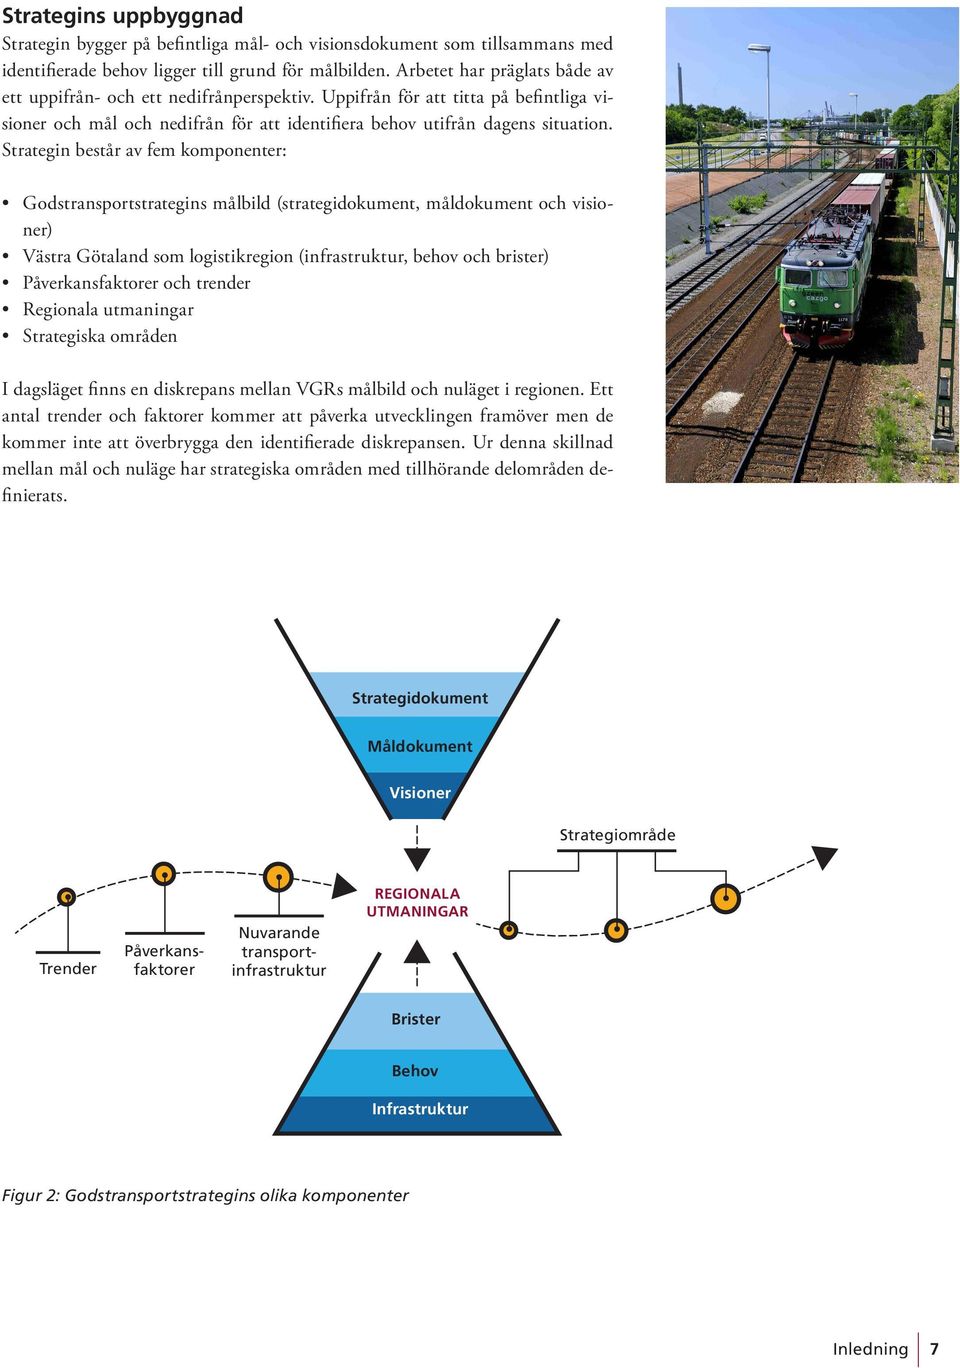 Strategin består av fem komponenter: Godstransportstrategins målbild (strategidokument, måldokument och visioner) Västra Götaland som logistikregion (infrastruktur, behov och brister)